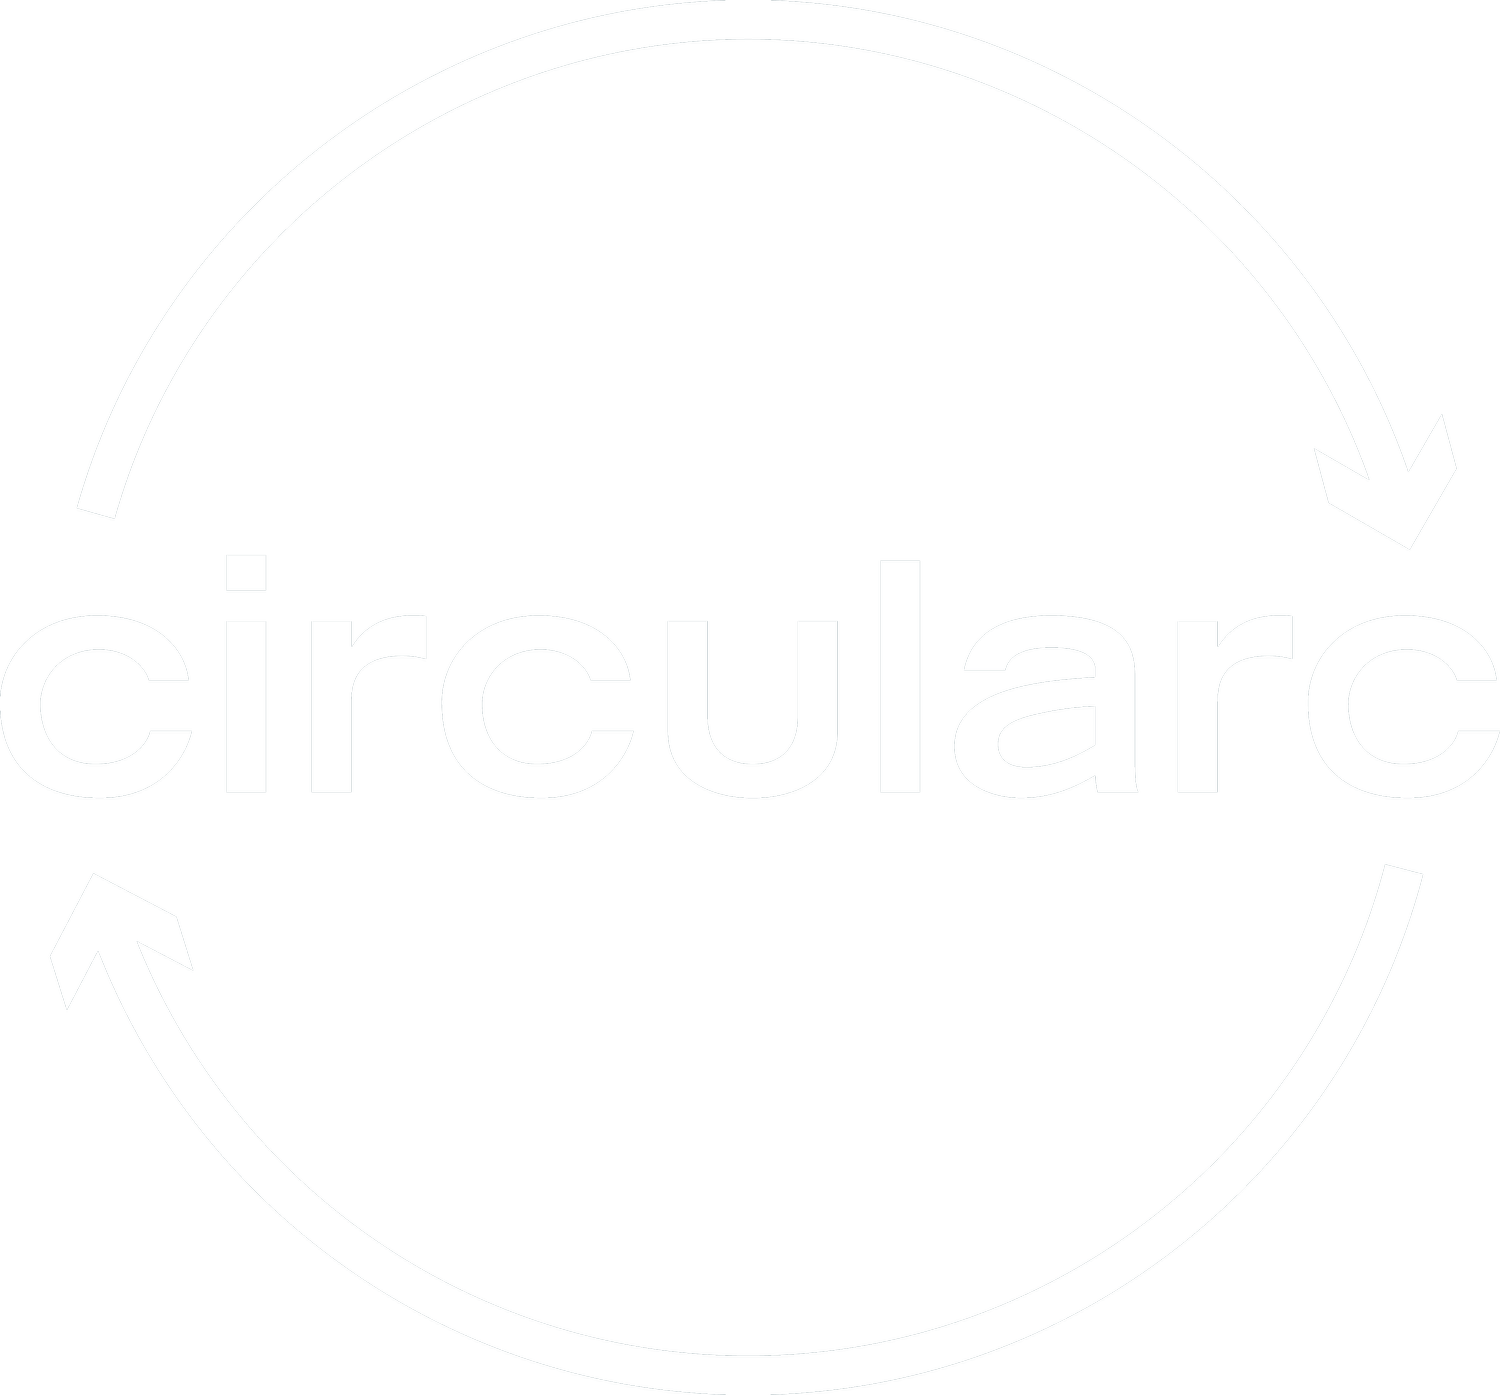 Circularc